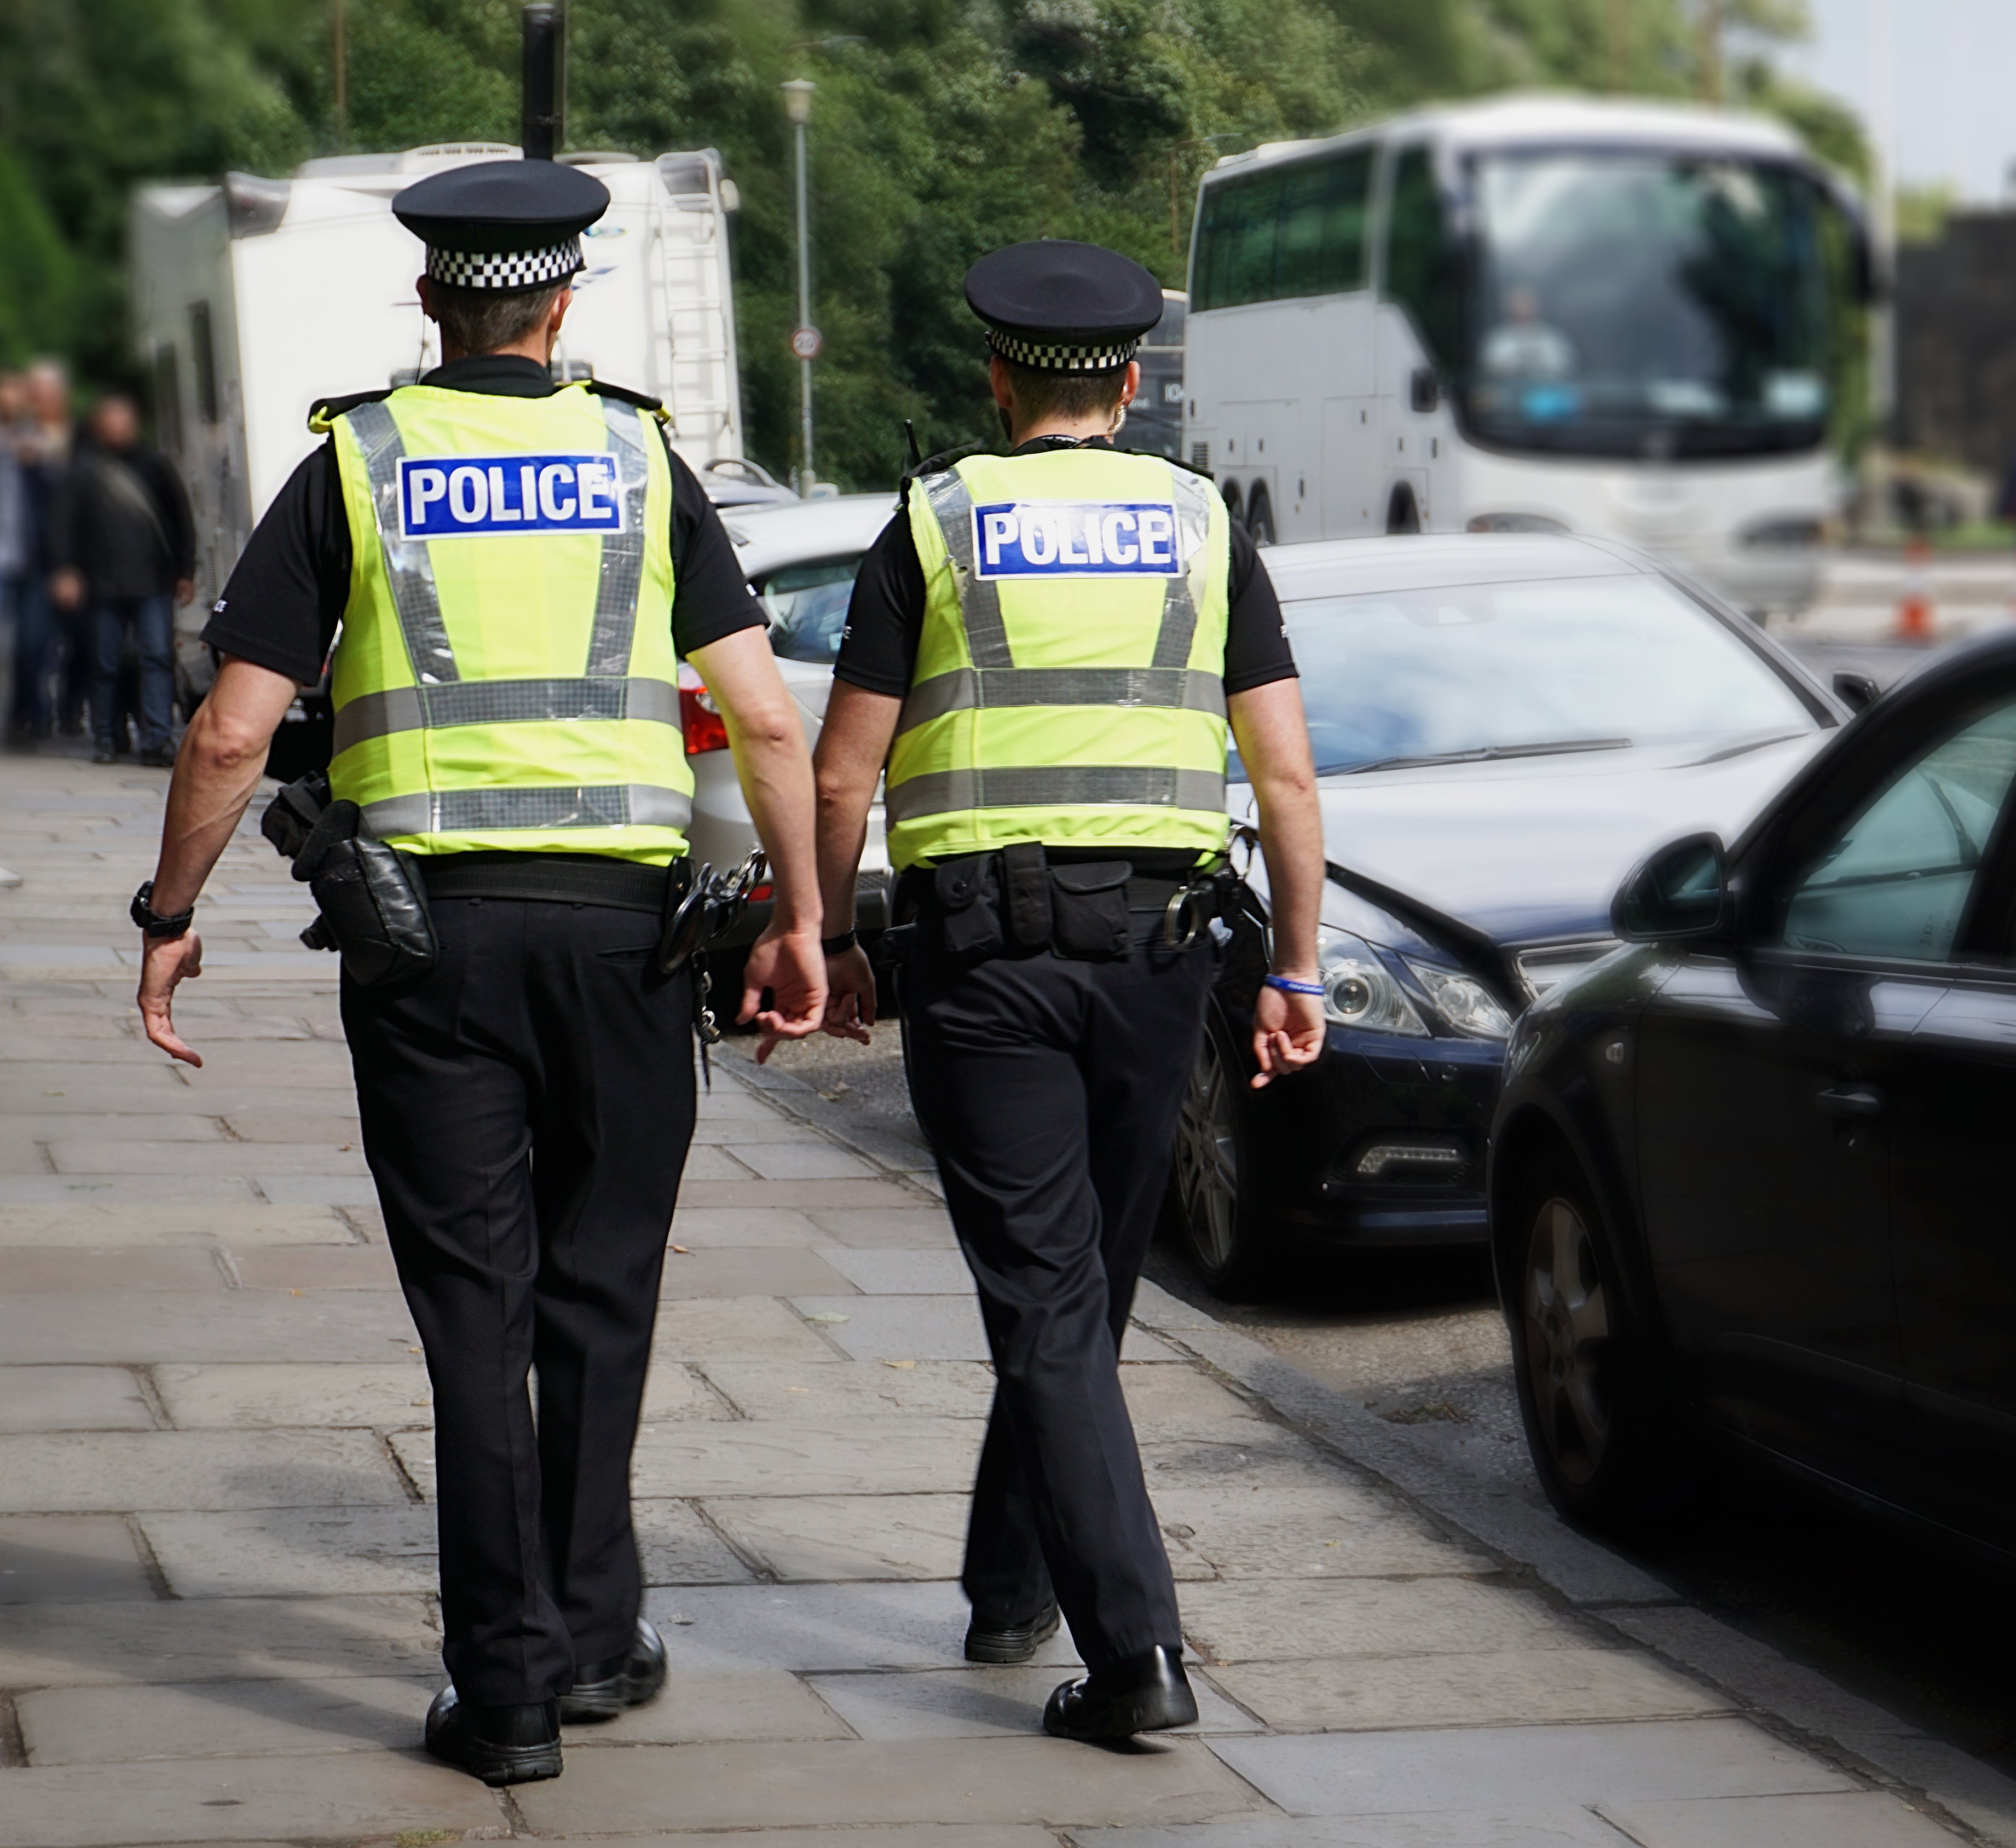 Zwei Polizisten im Dienst | Quelle: Shutterstock